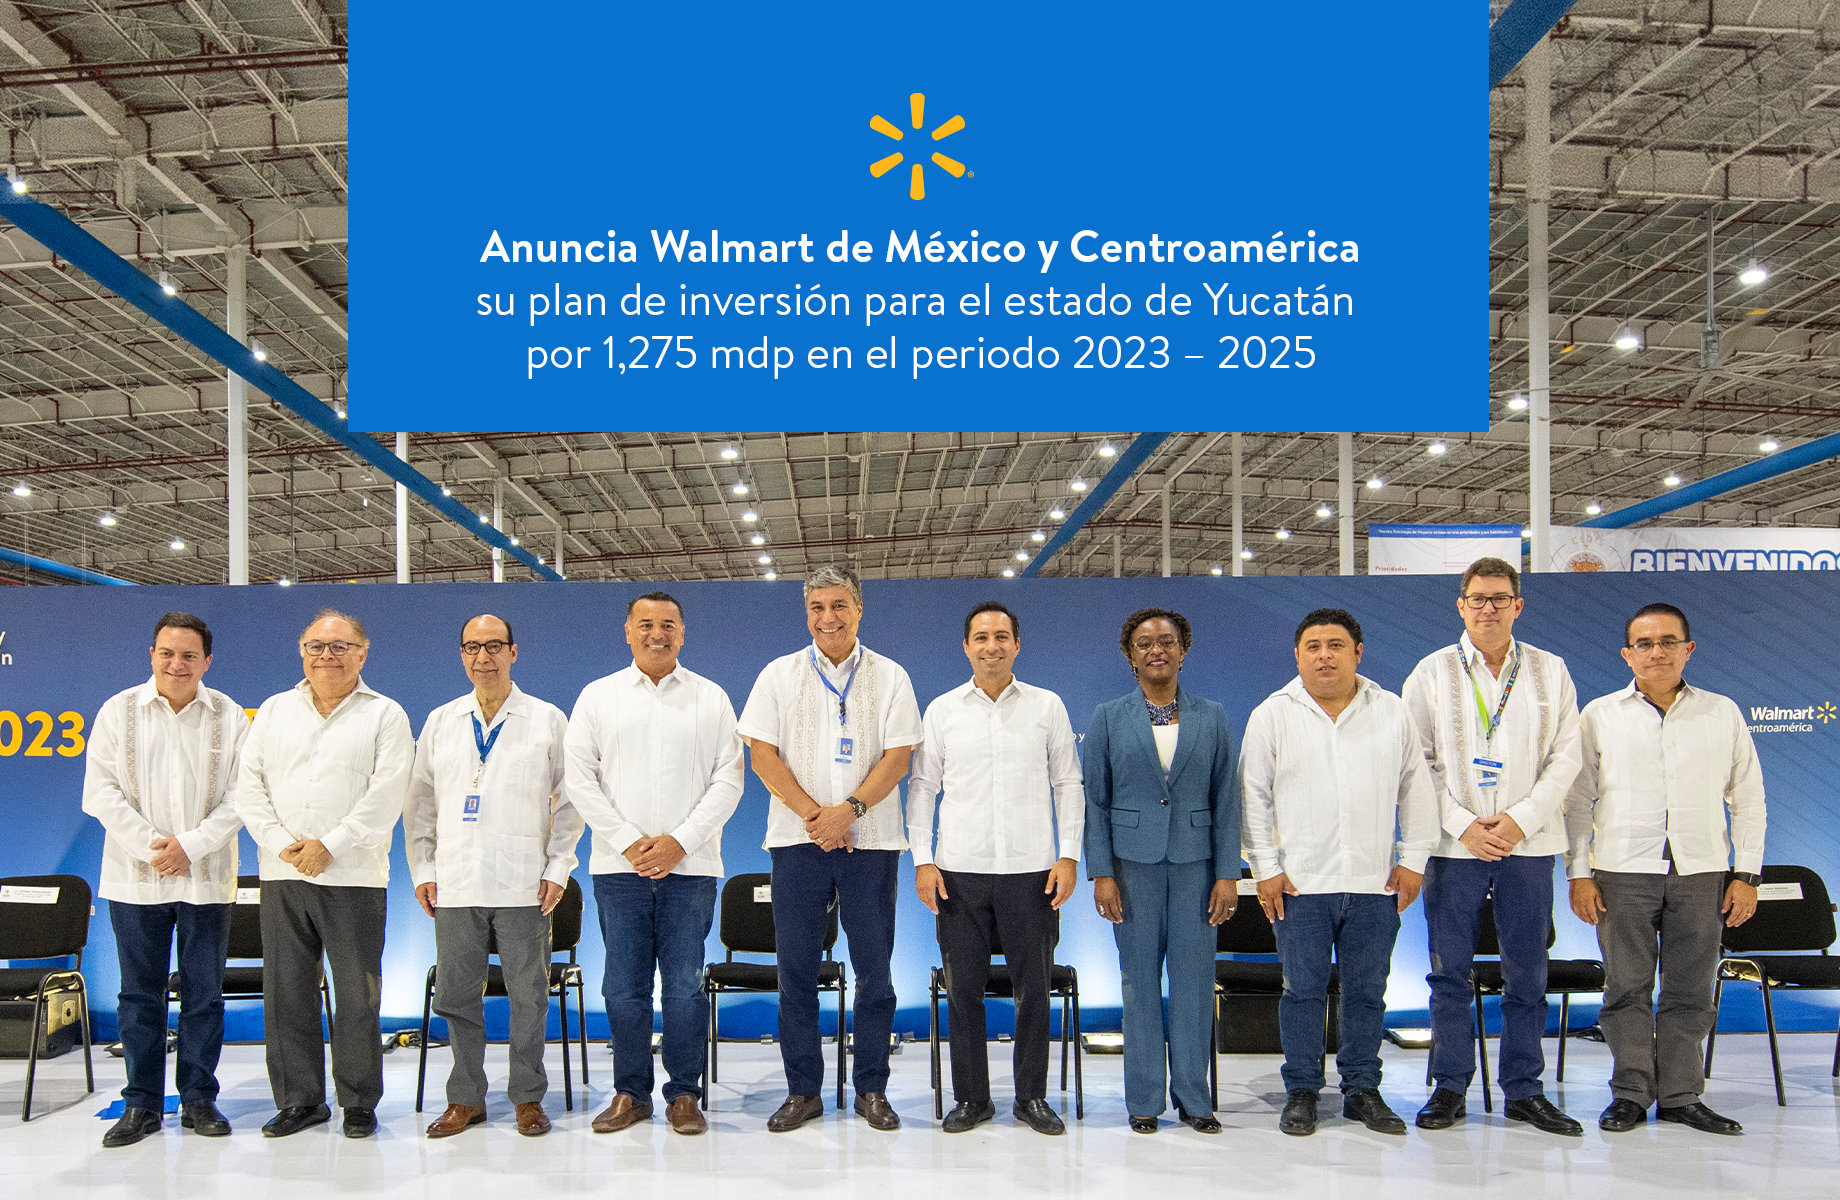 Walmart abrirá 28 nuevas unidades en Yucatán; planea una inversión de 1,275 mdp en la entidad